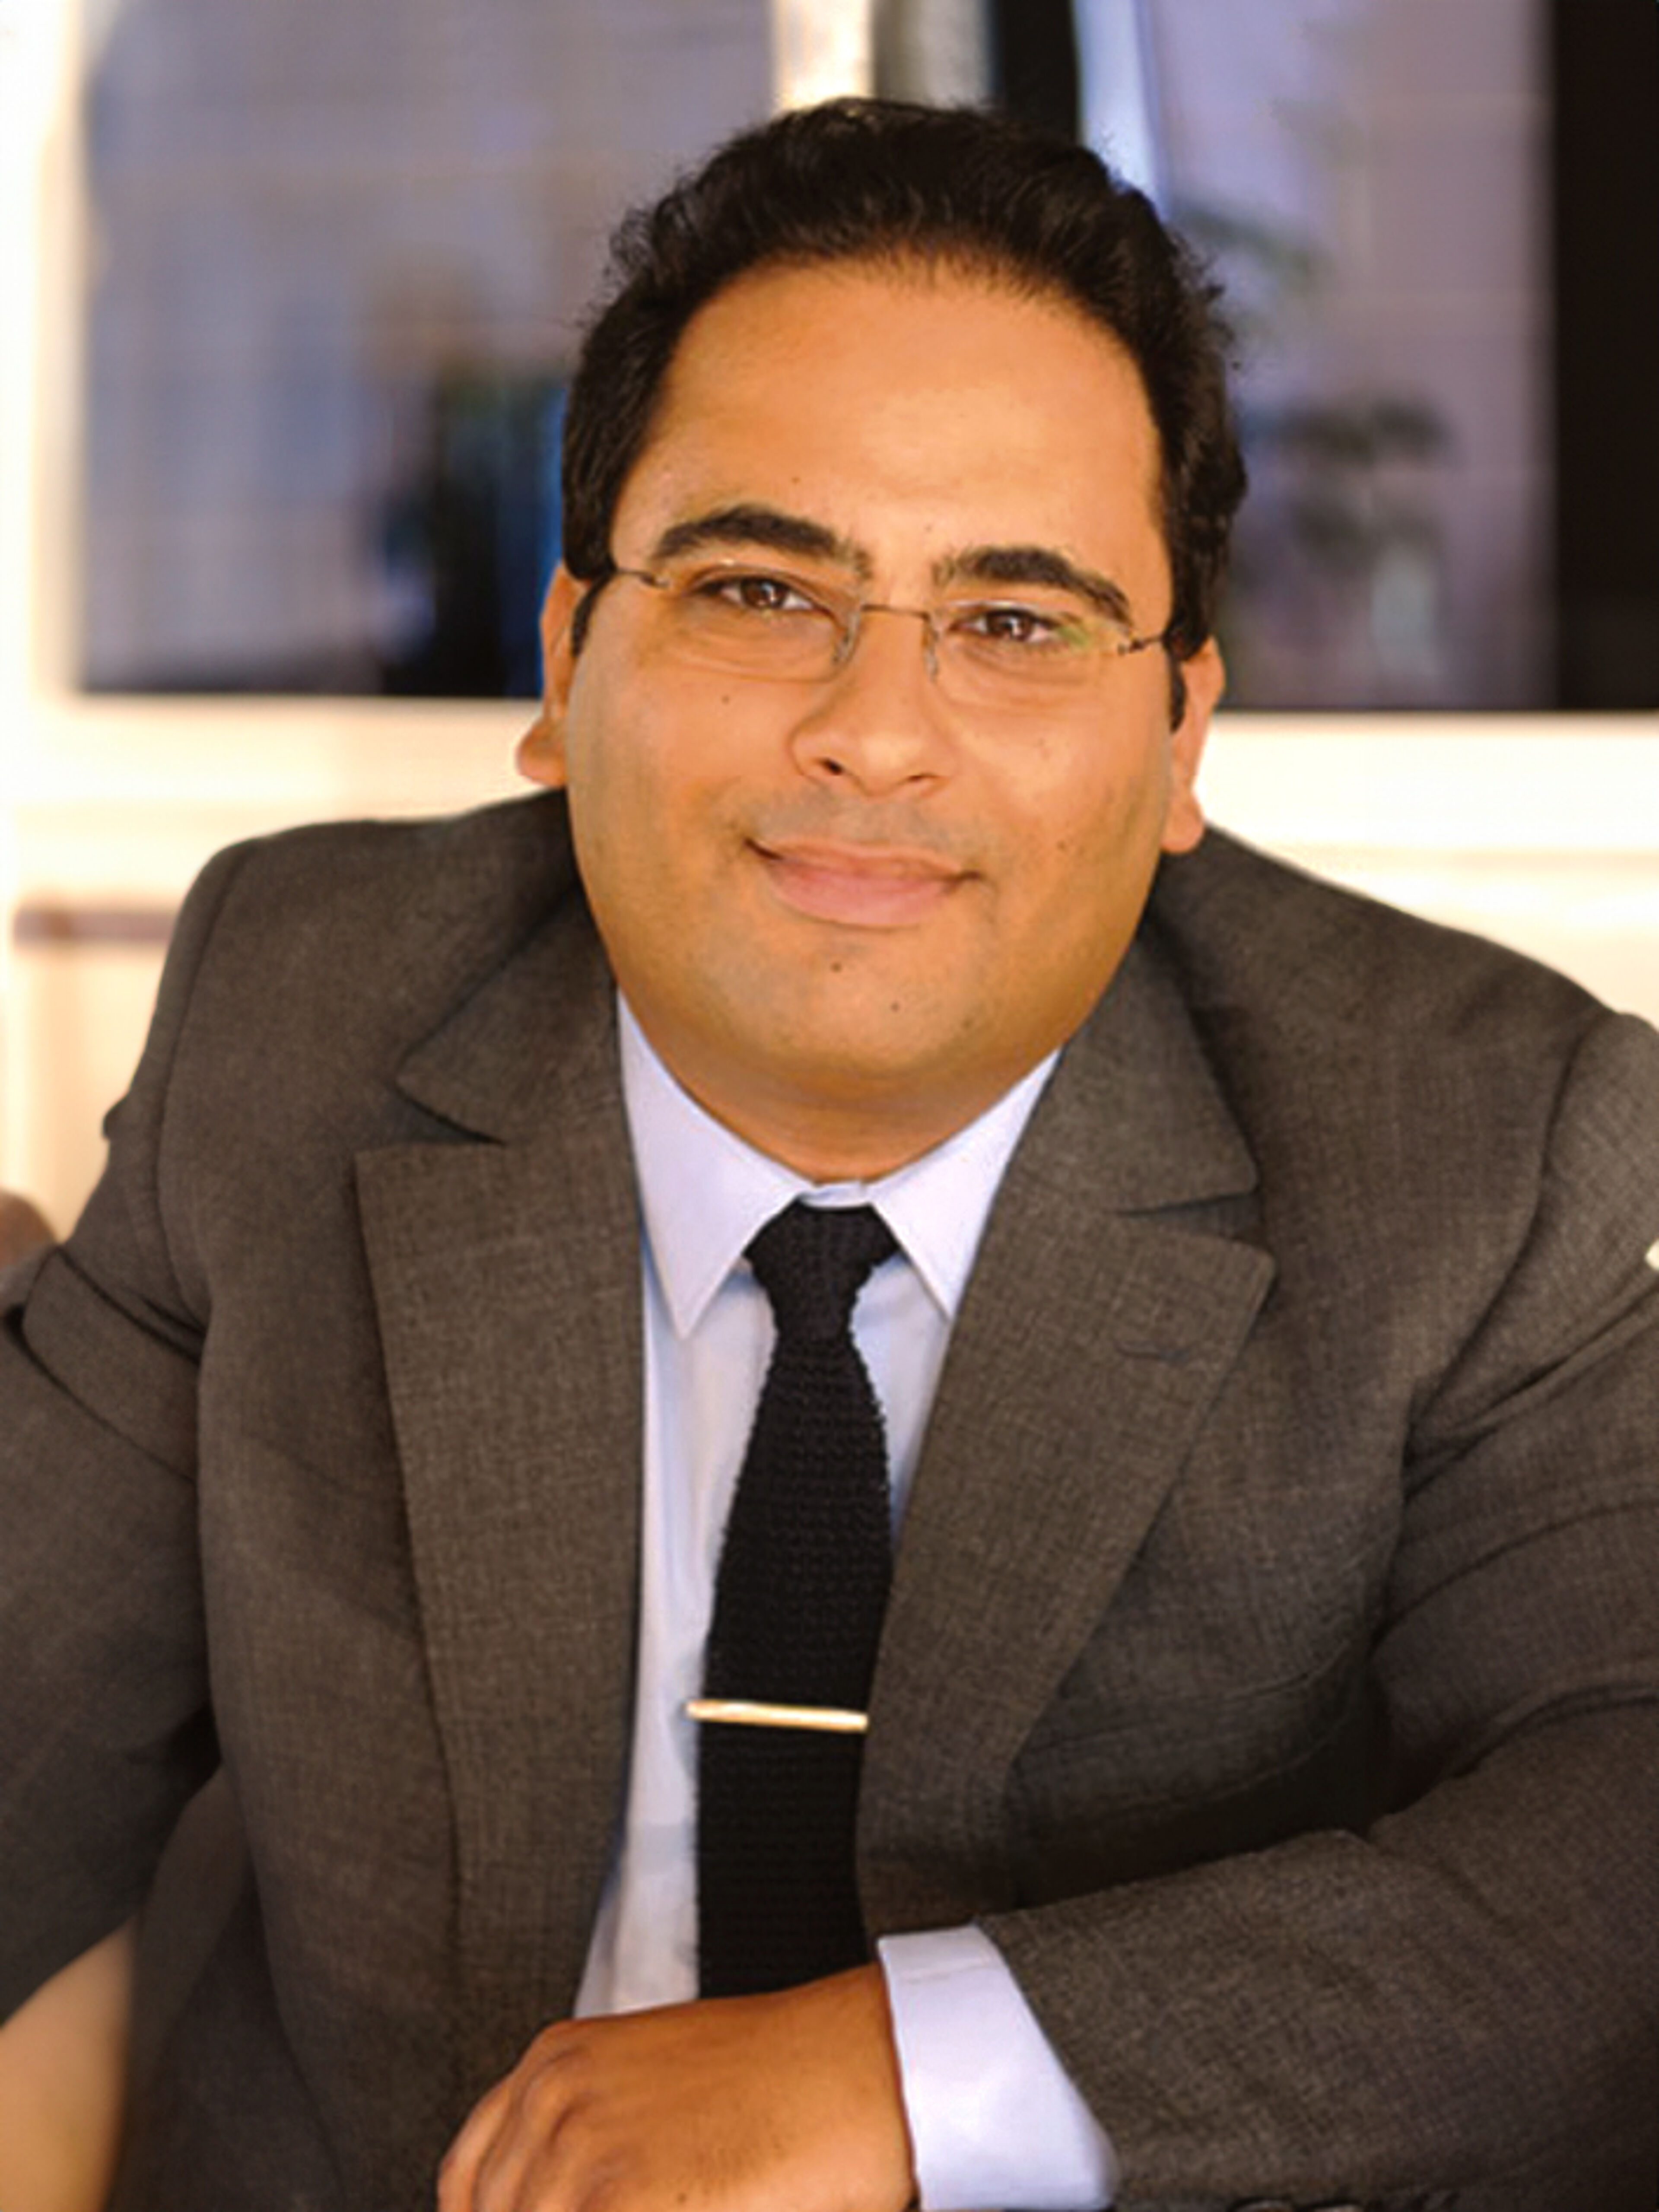 Professionnel masculin confiant en costume gris, chemise blanche et cravate noire, portant des lunettes, sur fond intérieur flou.